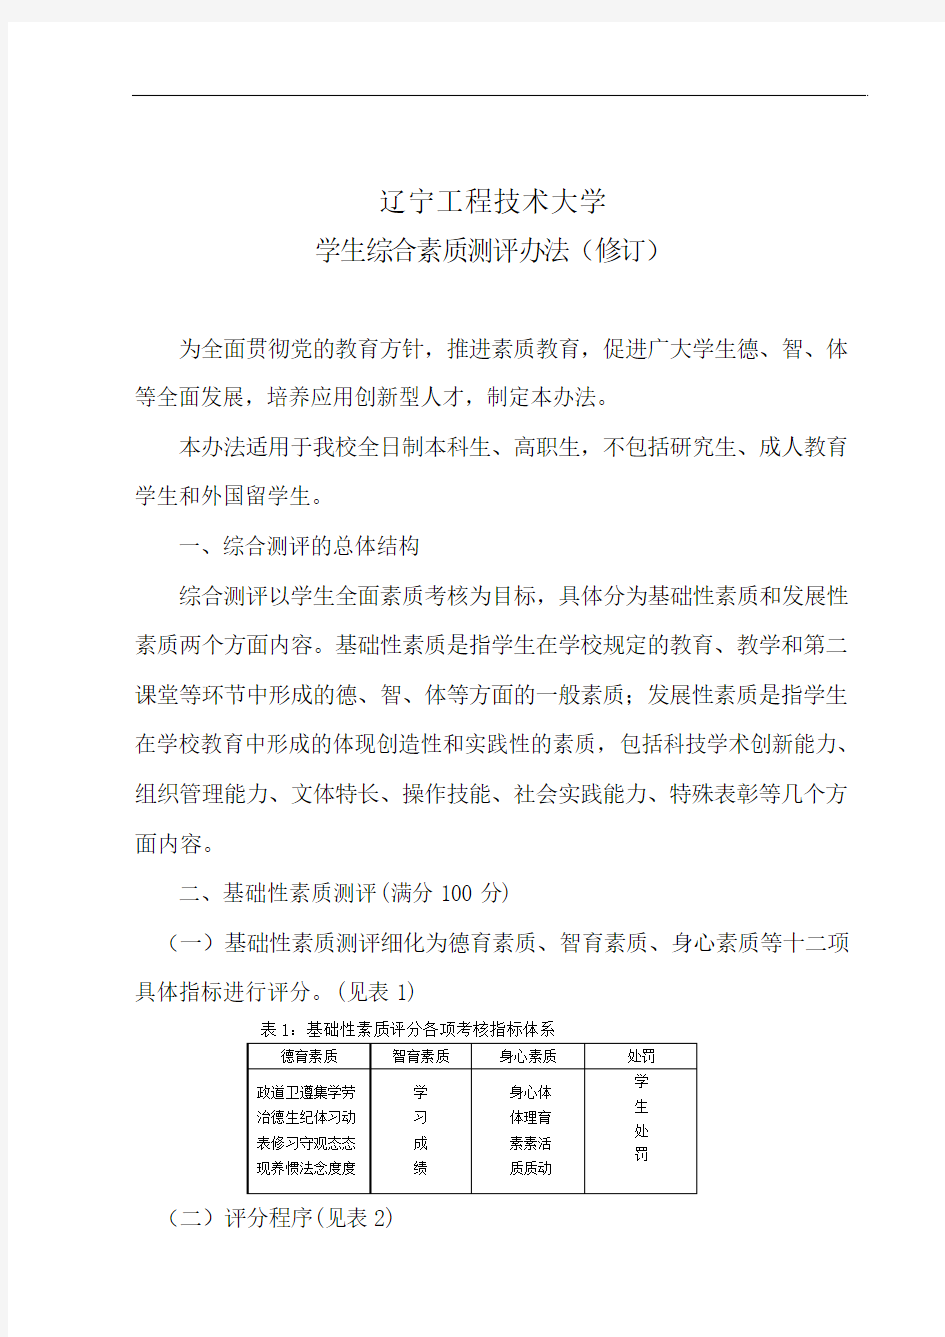 辽宁工程技术大学学生综合素质测评办法(修订)